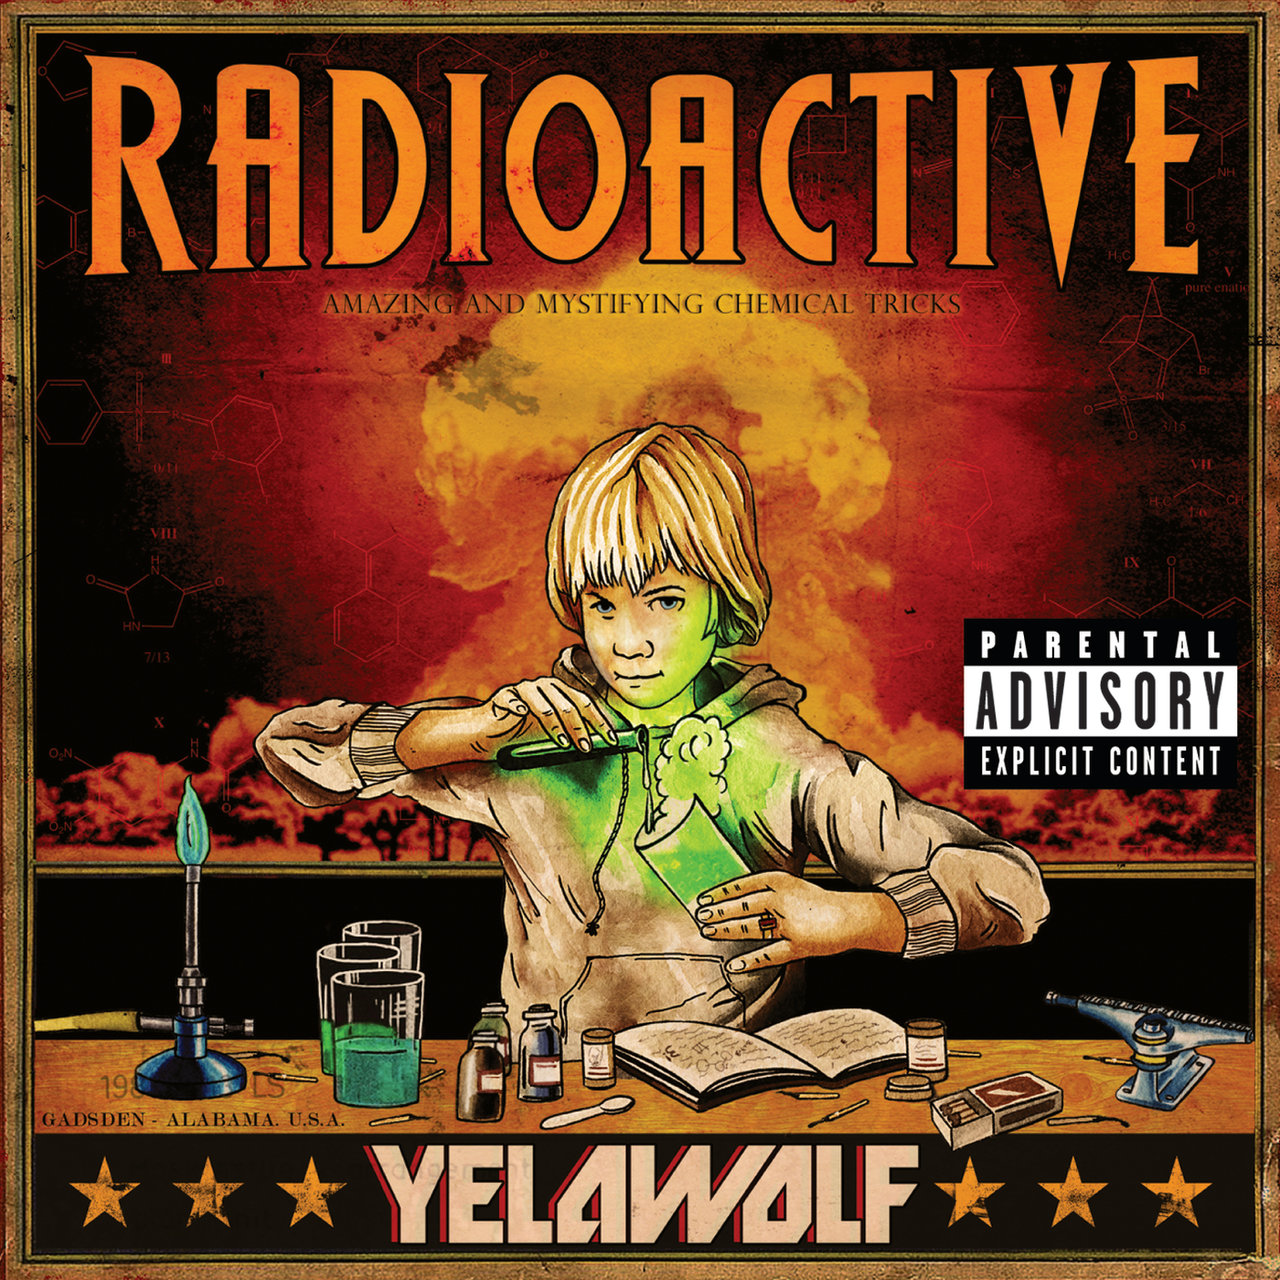 Yelawolf - Radioactive (Cover)